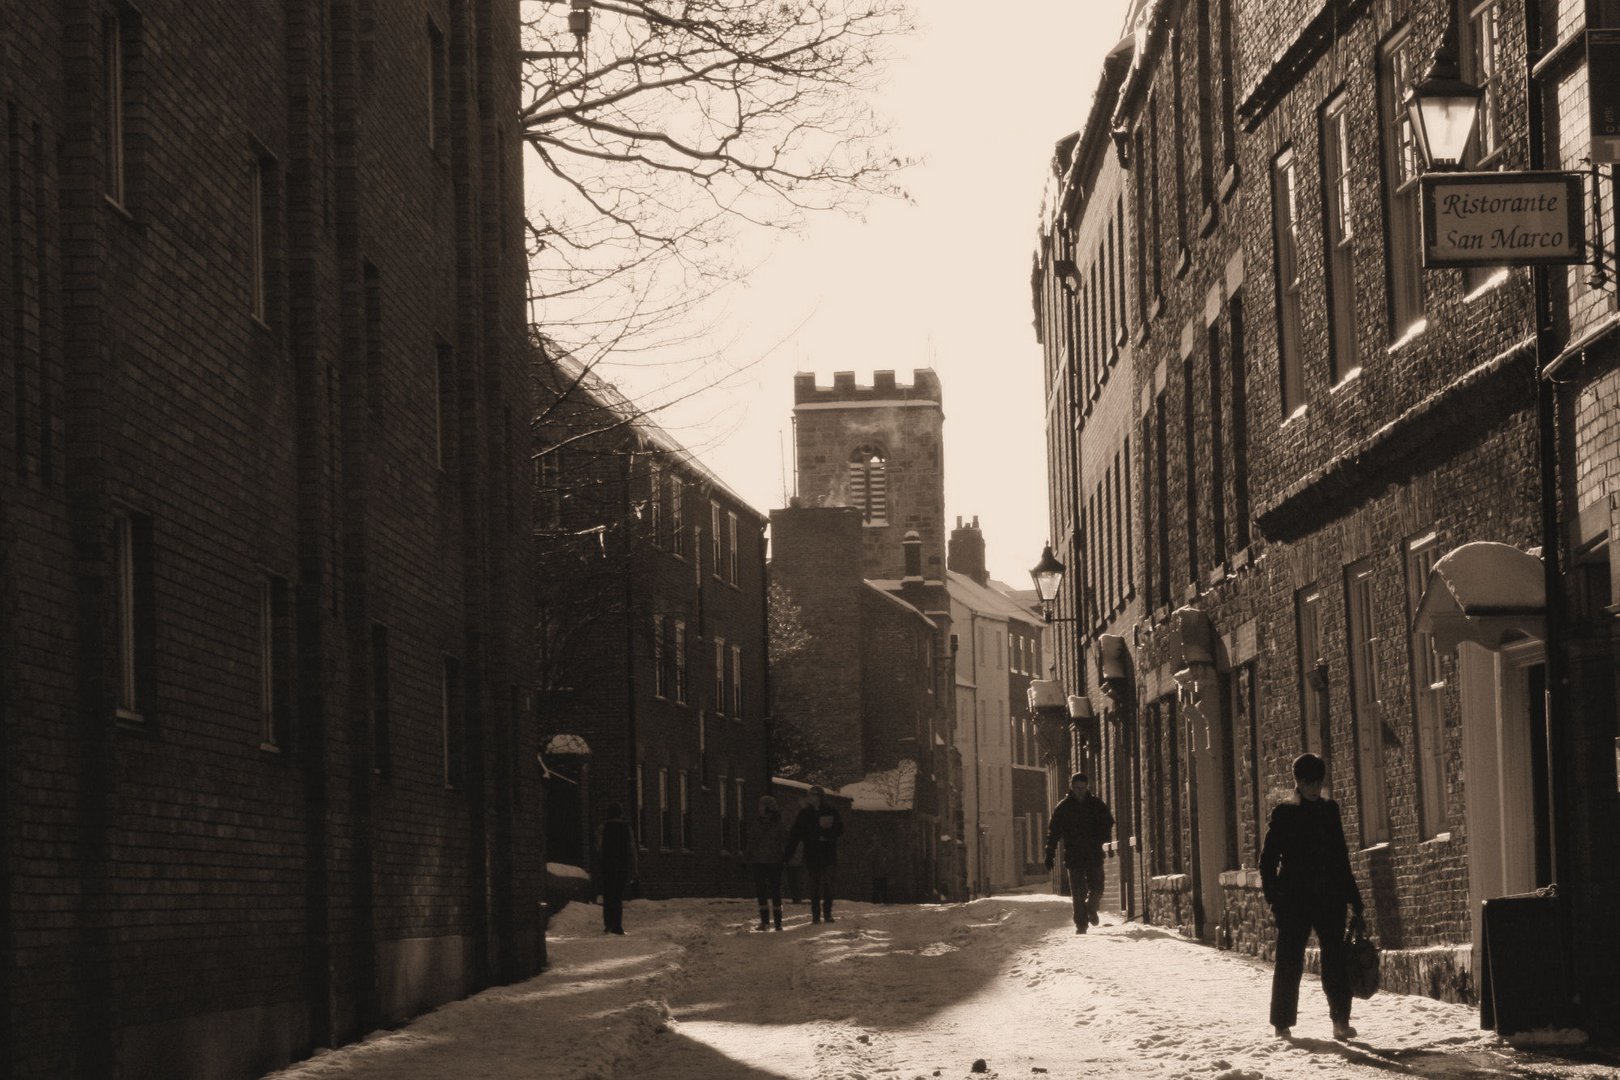 Winter in Durham